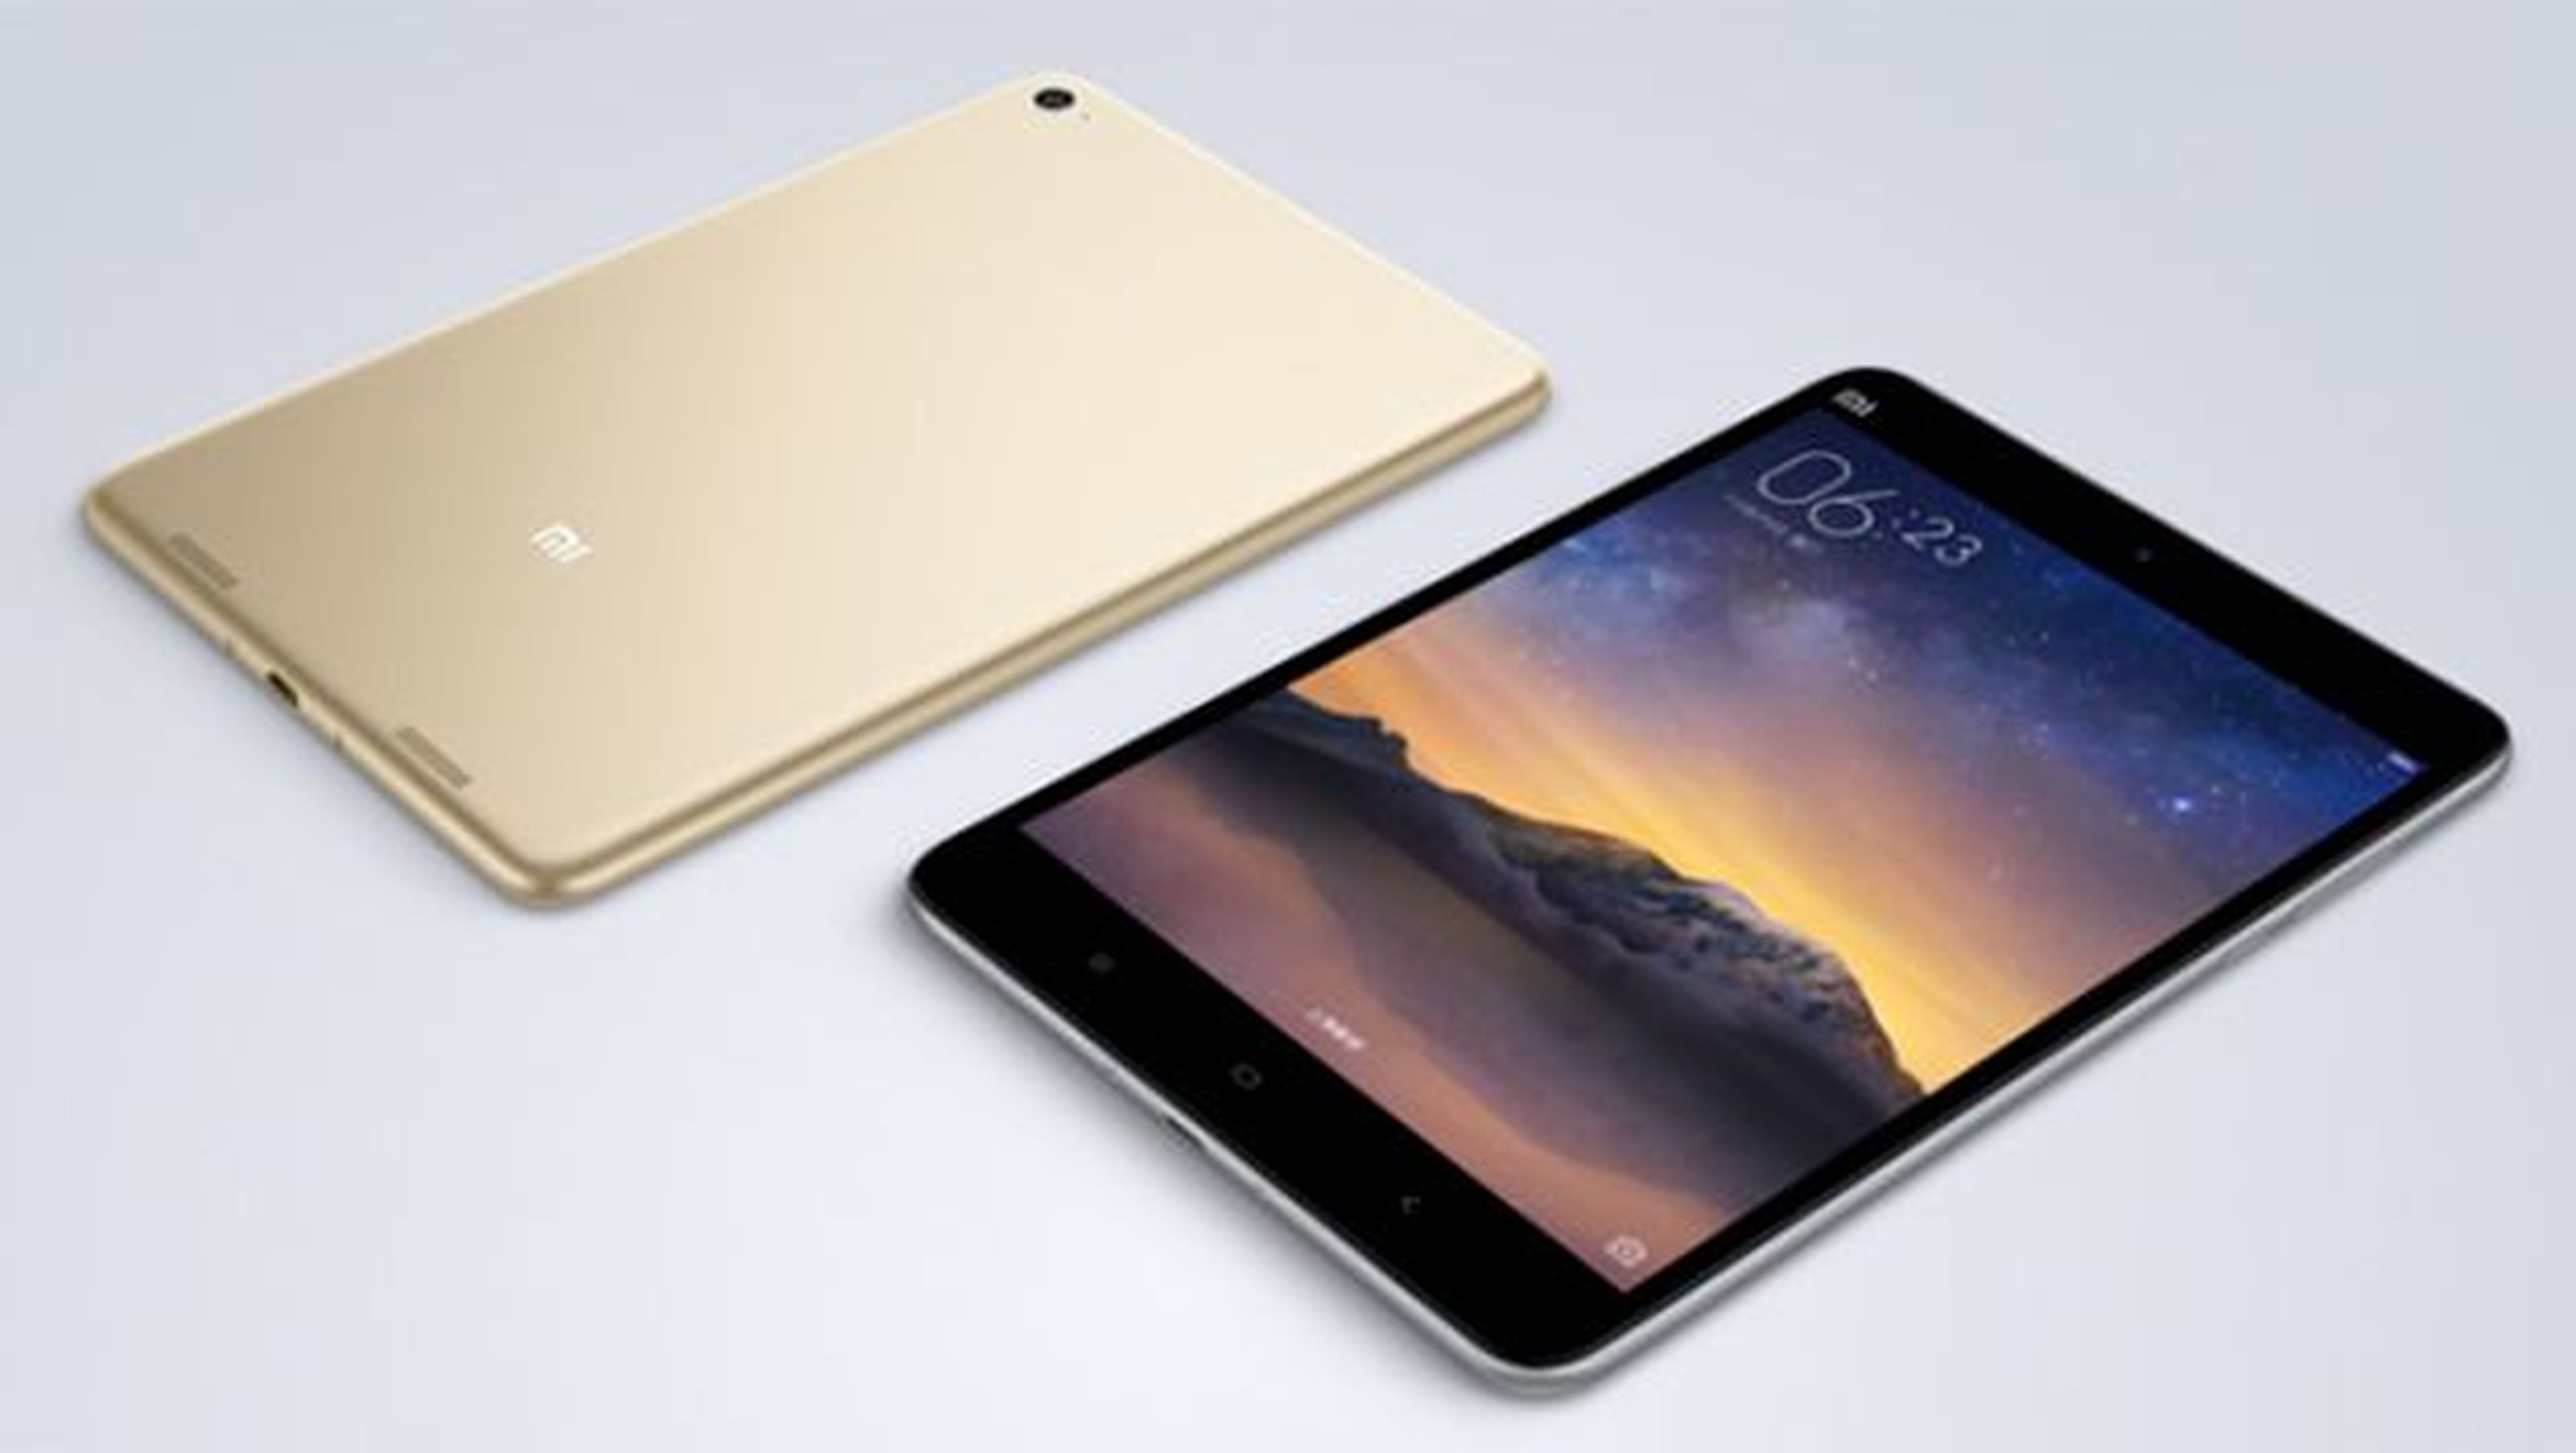 Apple Tablet iPad Pro (32GB, Wi-Fi, oro) de 12.9 pulgadas (renovada)